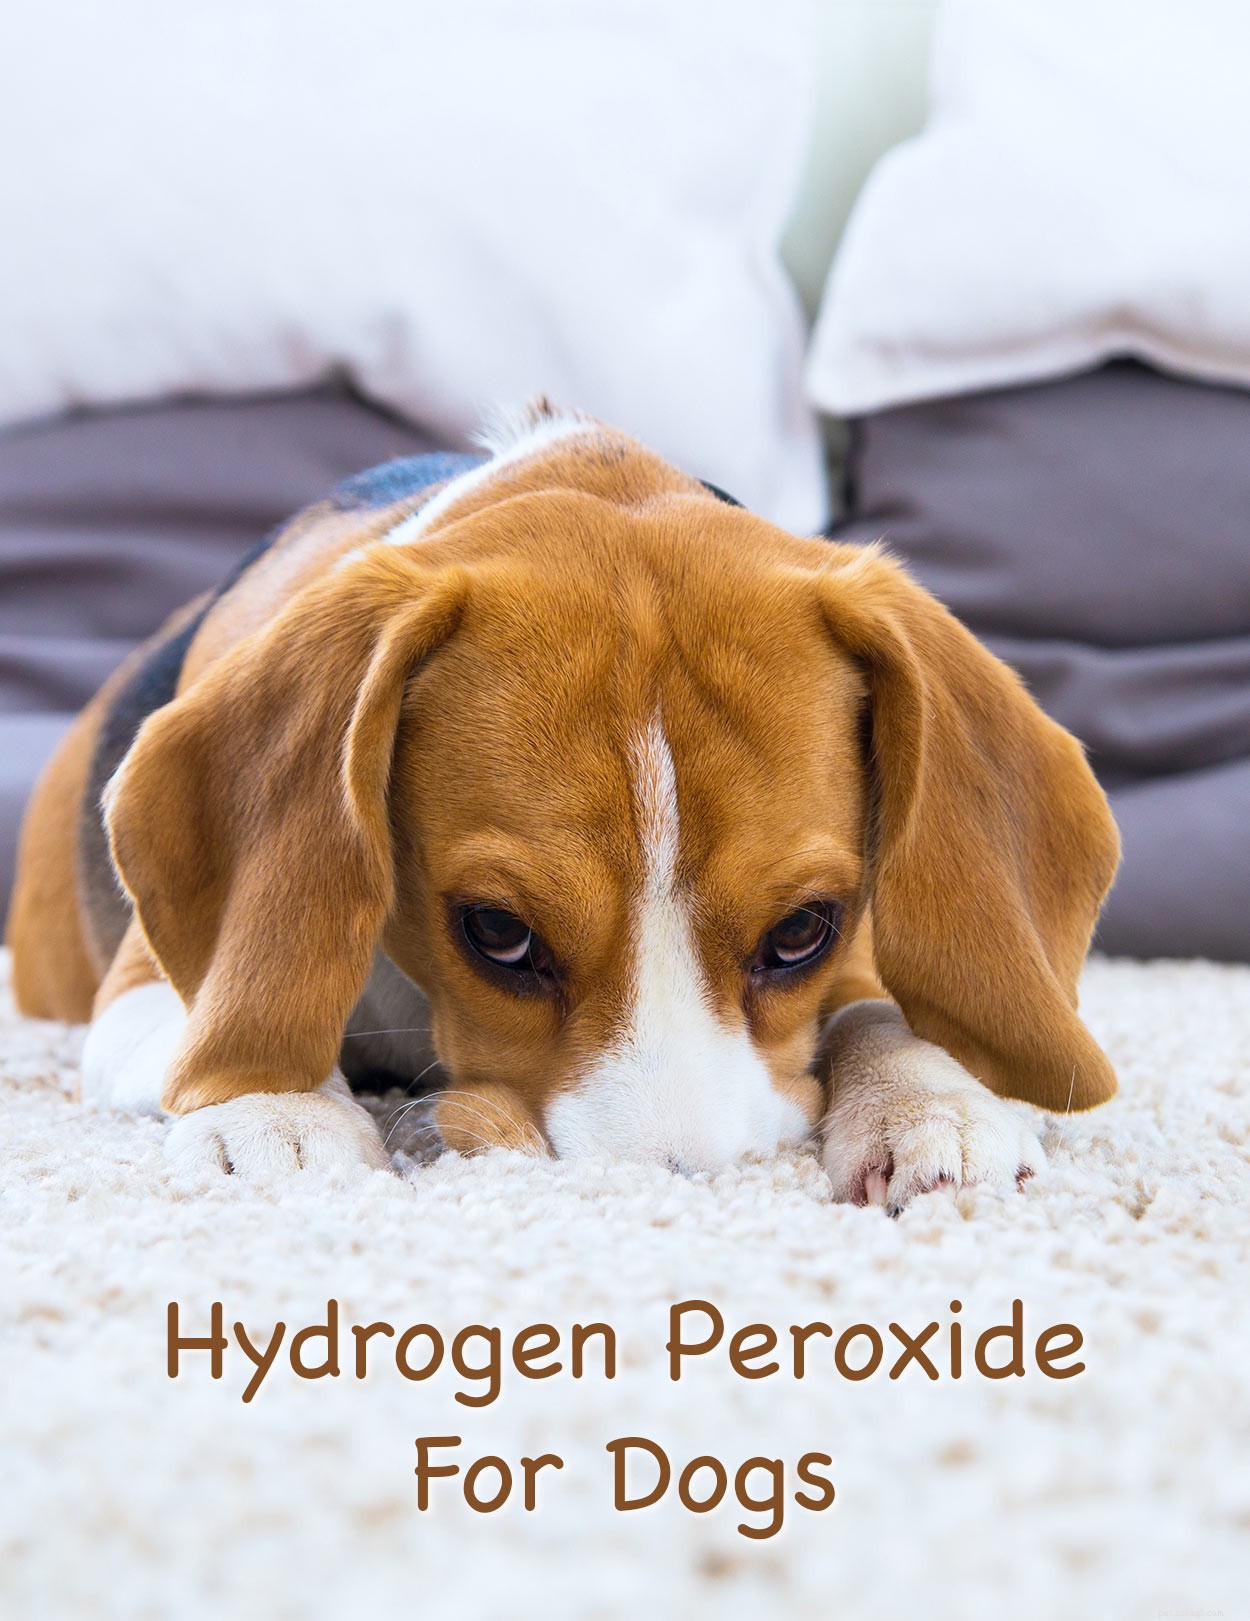 Waterstofperoxide voor honden – waar kan ik het veilig voor gebruiken?